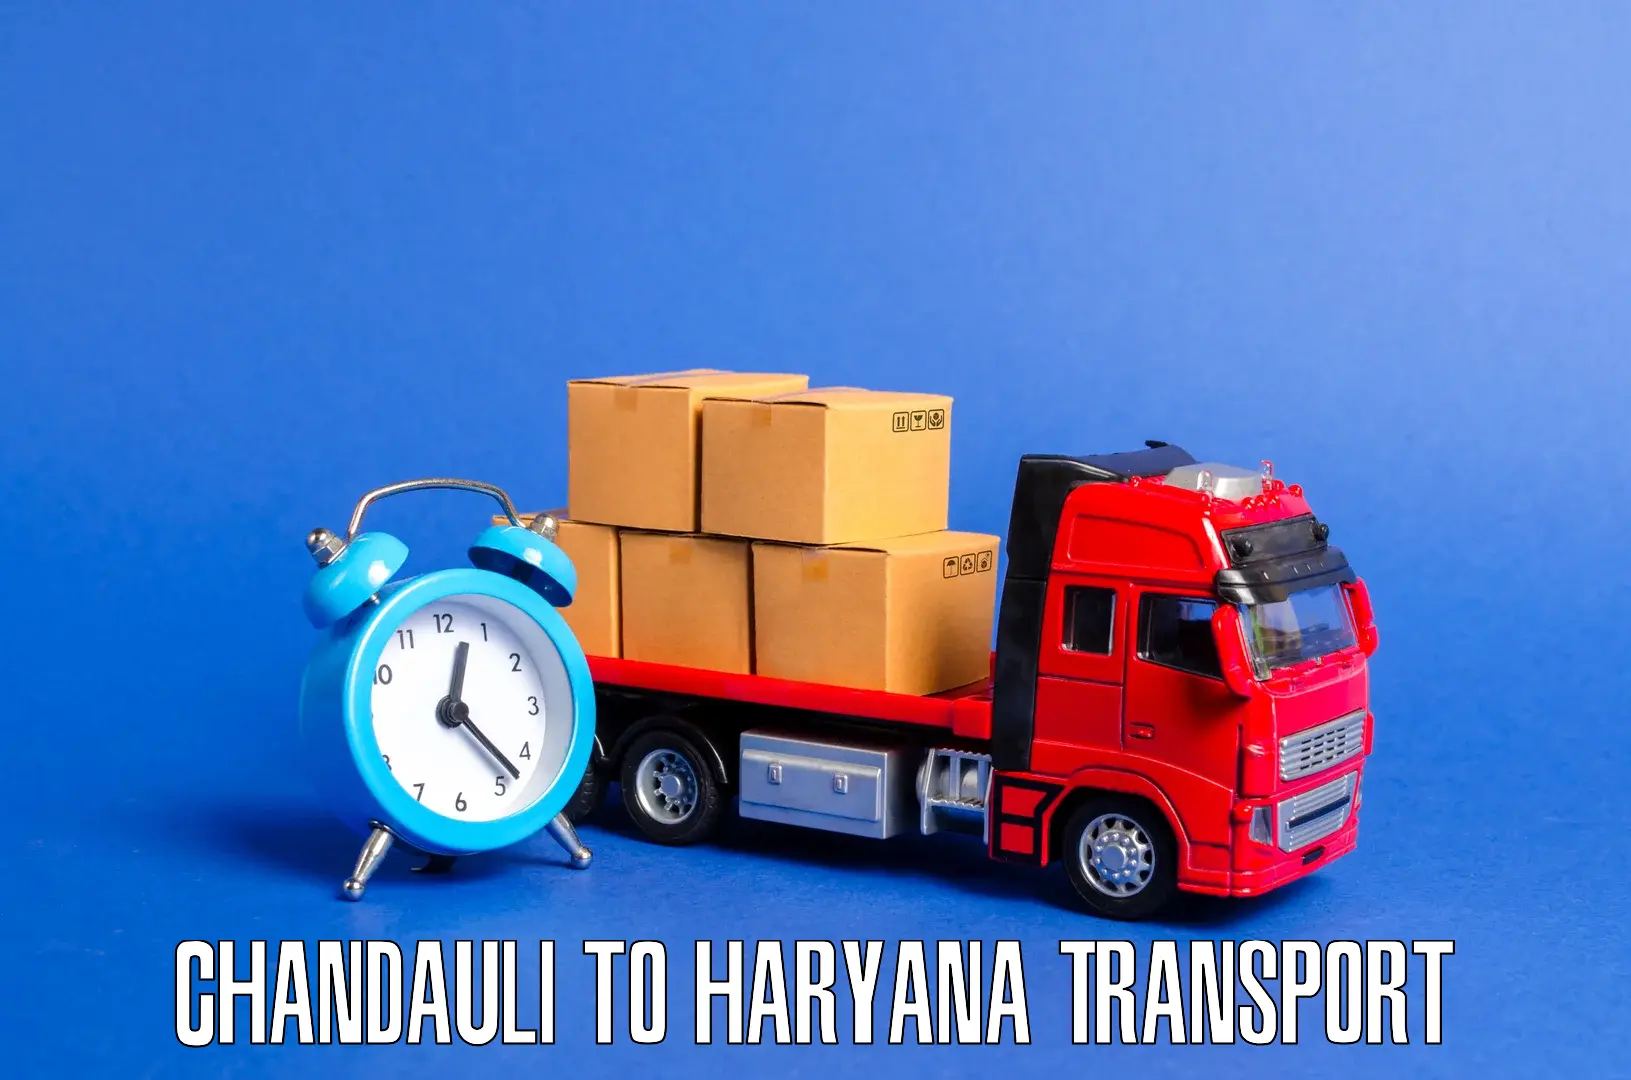 Vehicle transport services Chandauli to Panipat